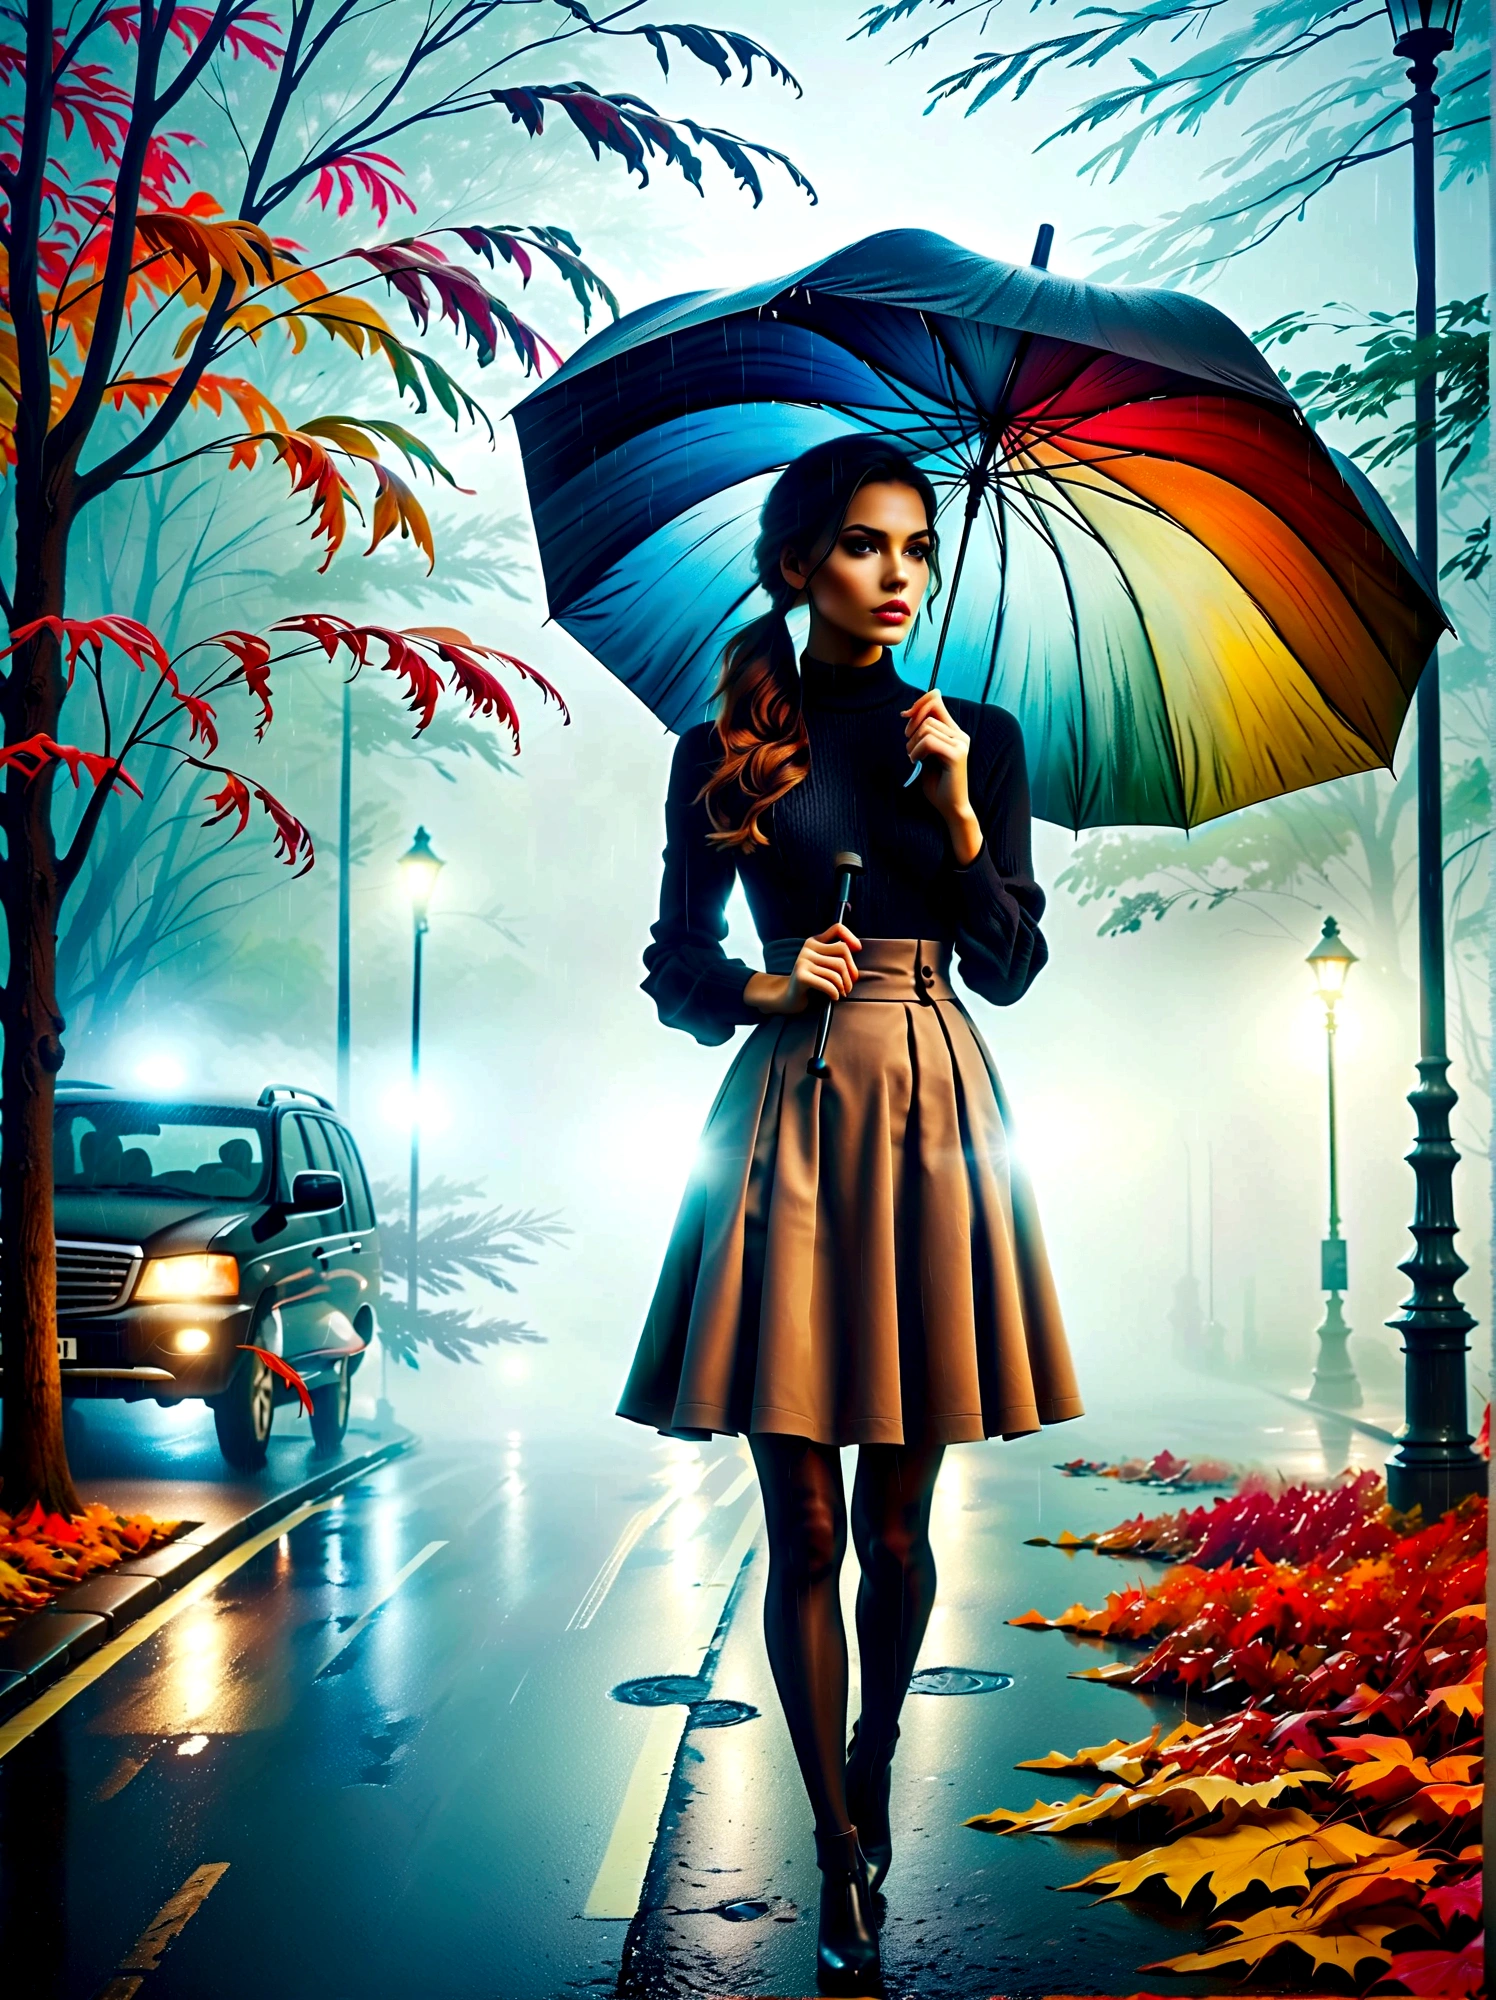 傘を手に持ったタイトなドレスを着た女性, in einer 霧深いen Stadt, 街頭に色とりどりの紅葉, クノ・ヴィーバーによる写真, pixabayコンテスト優勝者, コンセプチュアルアート, 雨の中に立っている,  mysterious 女性, かわいい女の子, 雨の中に立つ, 傘を持つ独身者, 女性 ((シルエット)), ((霧深い)) 雨が降る, 影の中の女性のイメージ, 雨の多い環境で, 雨天, 背景には雨の降る道路 , ((光のある霧)), ((後ろから見た図)), 正面からの光